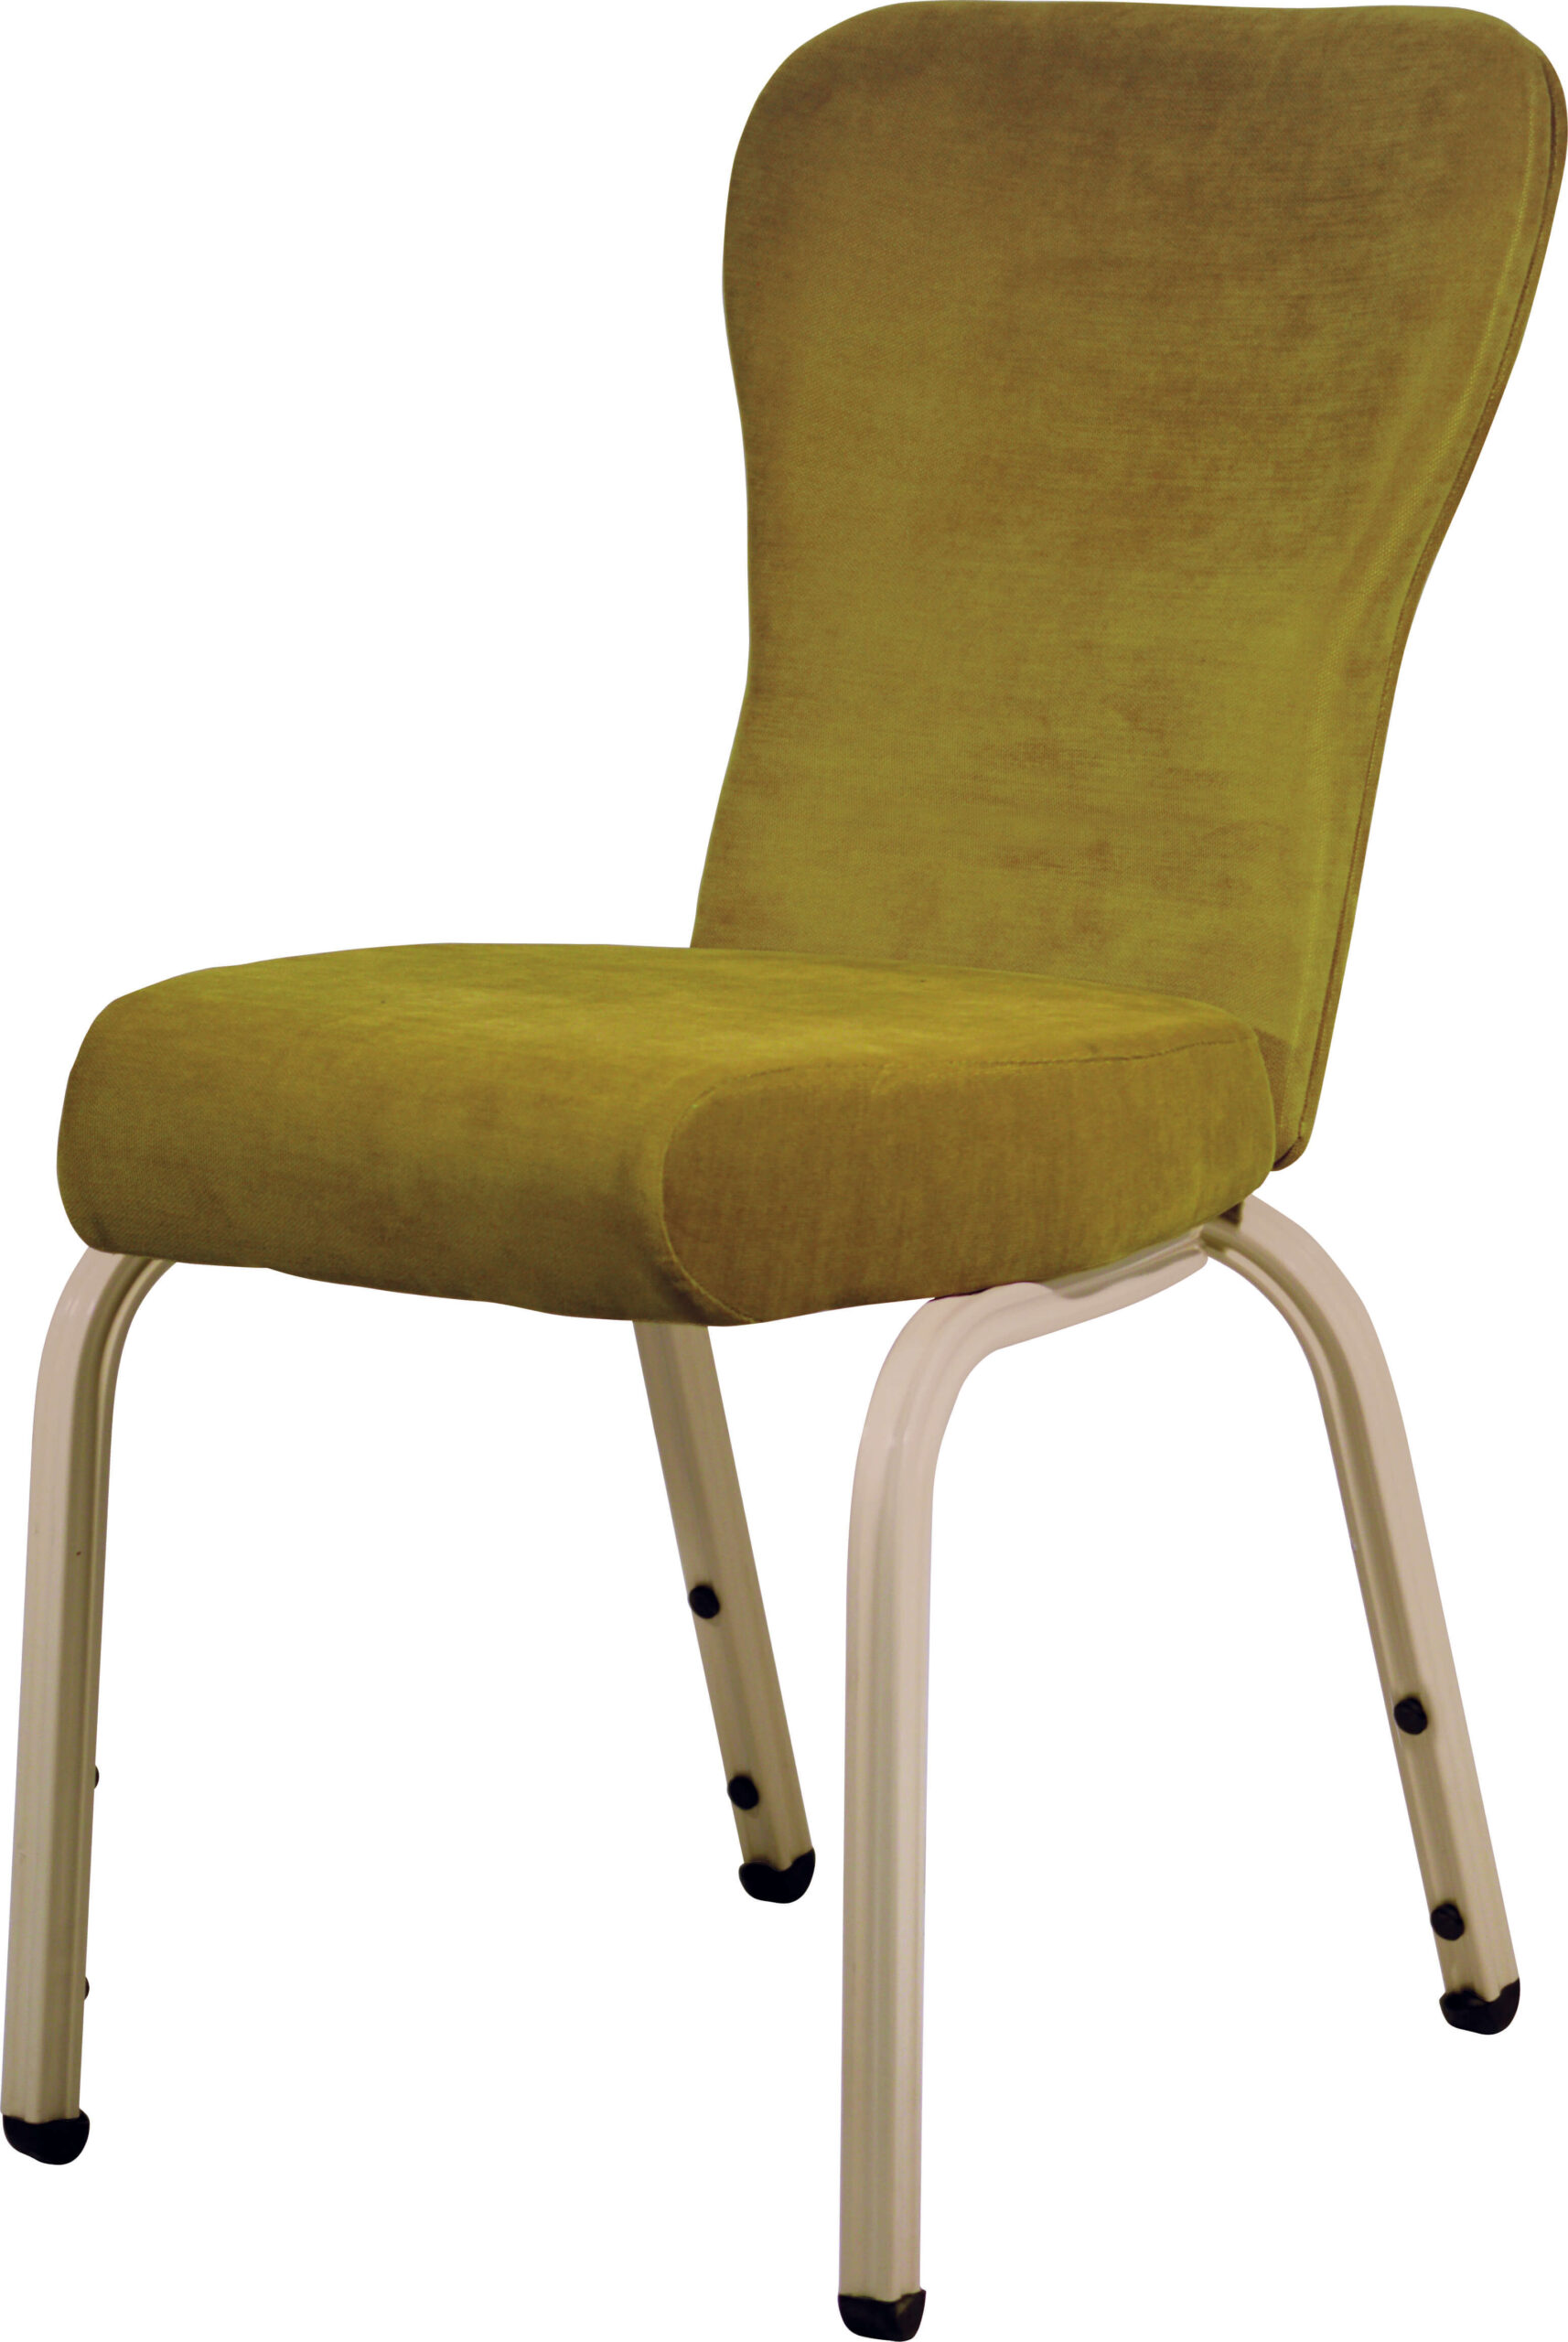 1631-es-banquet-chair-flexible-back-otelsan